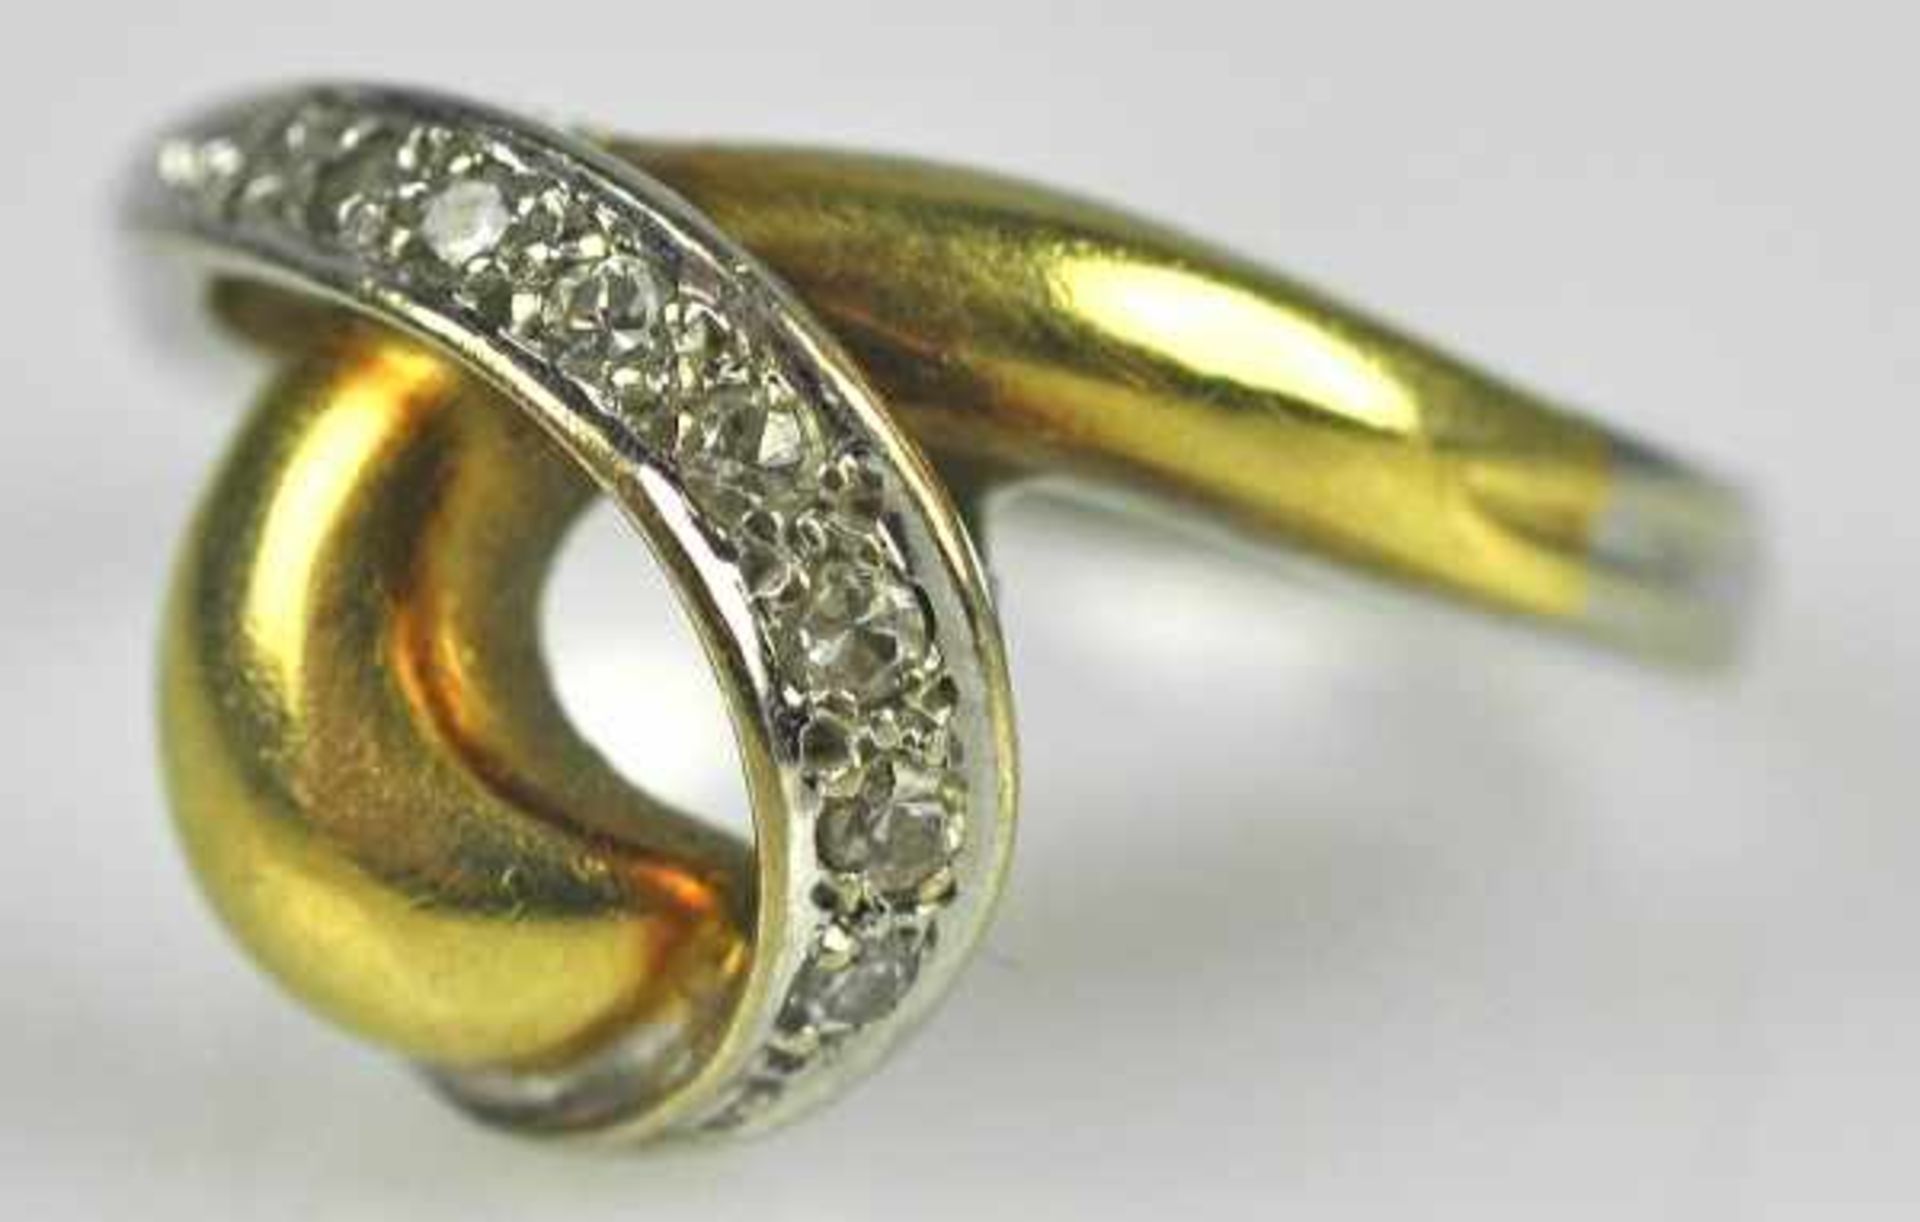 KNOTENRING bicolor, Weißgoldband besetzt mit Diamanten mit poliertem Gelbgoldband, Gold 14ct, 4,56g, - Bild 2 aus 3